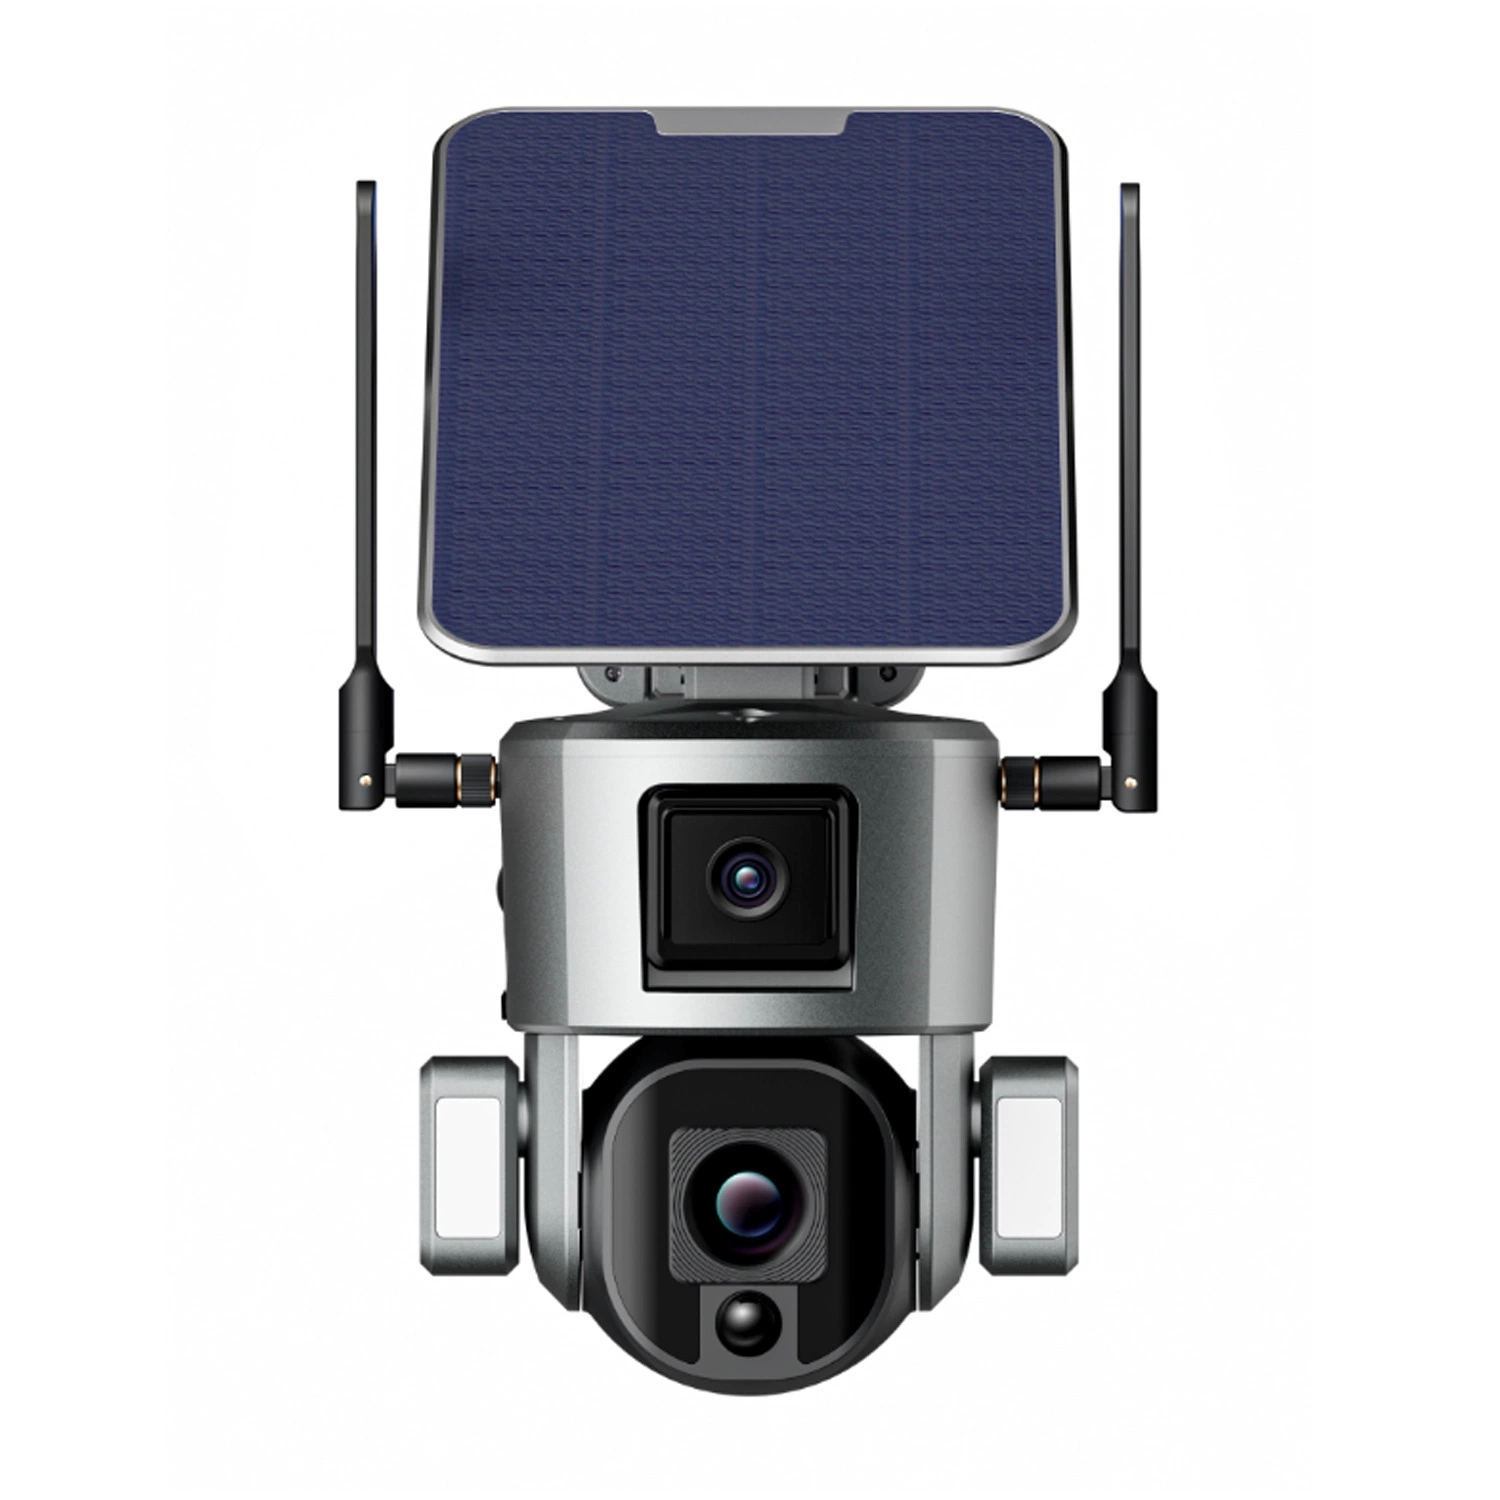 Melhor proteção Rastreamento humano alarme GSM piscina duas áudio bidirecional 4K lente dupla 4G alimentada a energia solar do Holofote da bateria da câmara PTZ